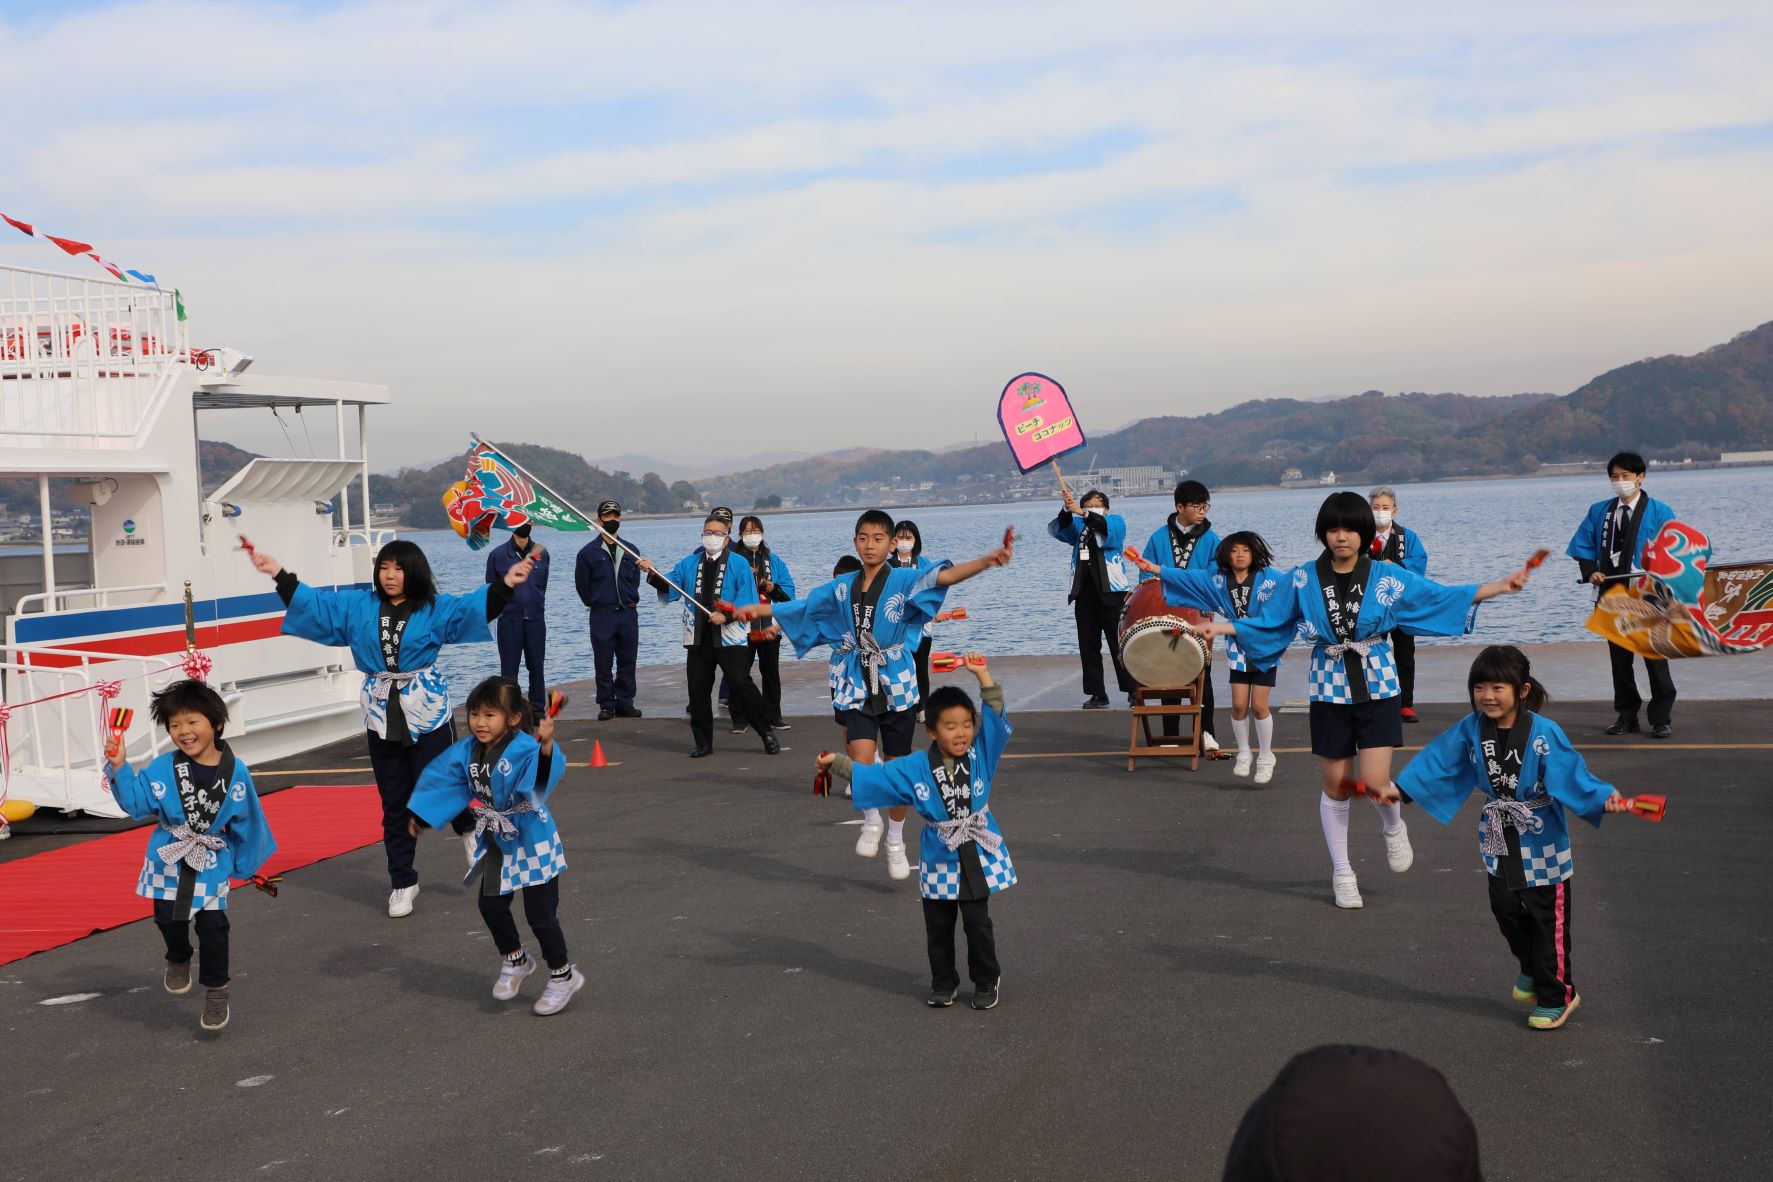 百島幼稚園・小中学生による演舞「いわしゃみソーラン」を披露